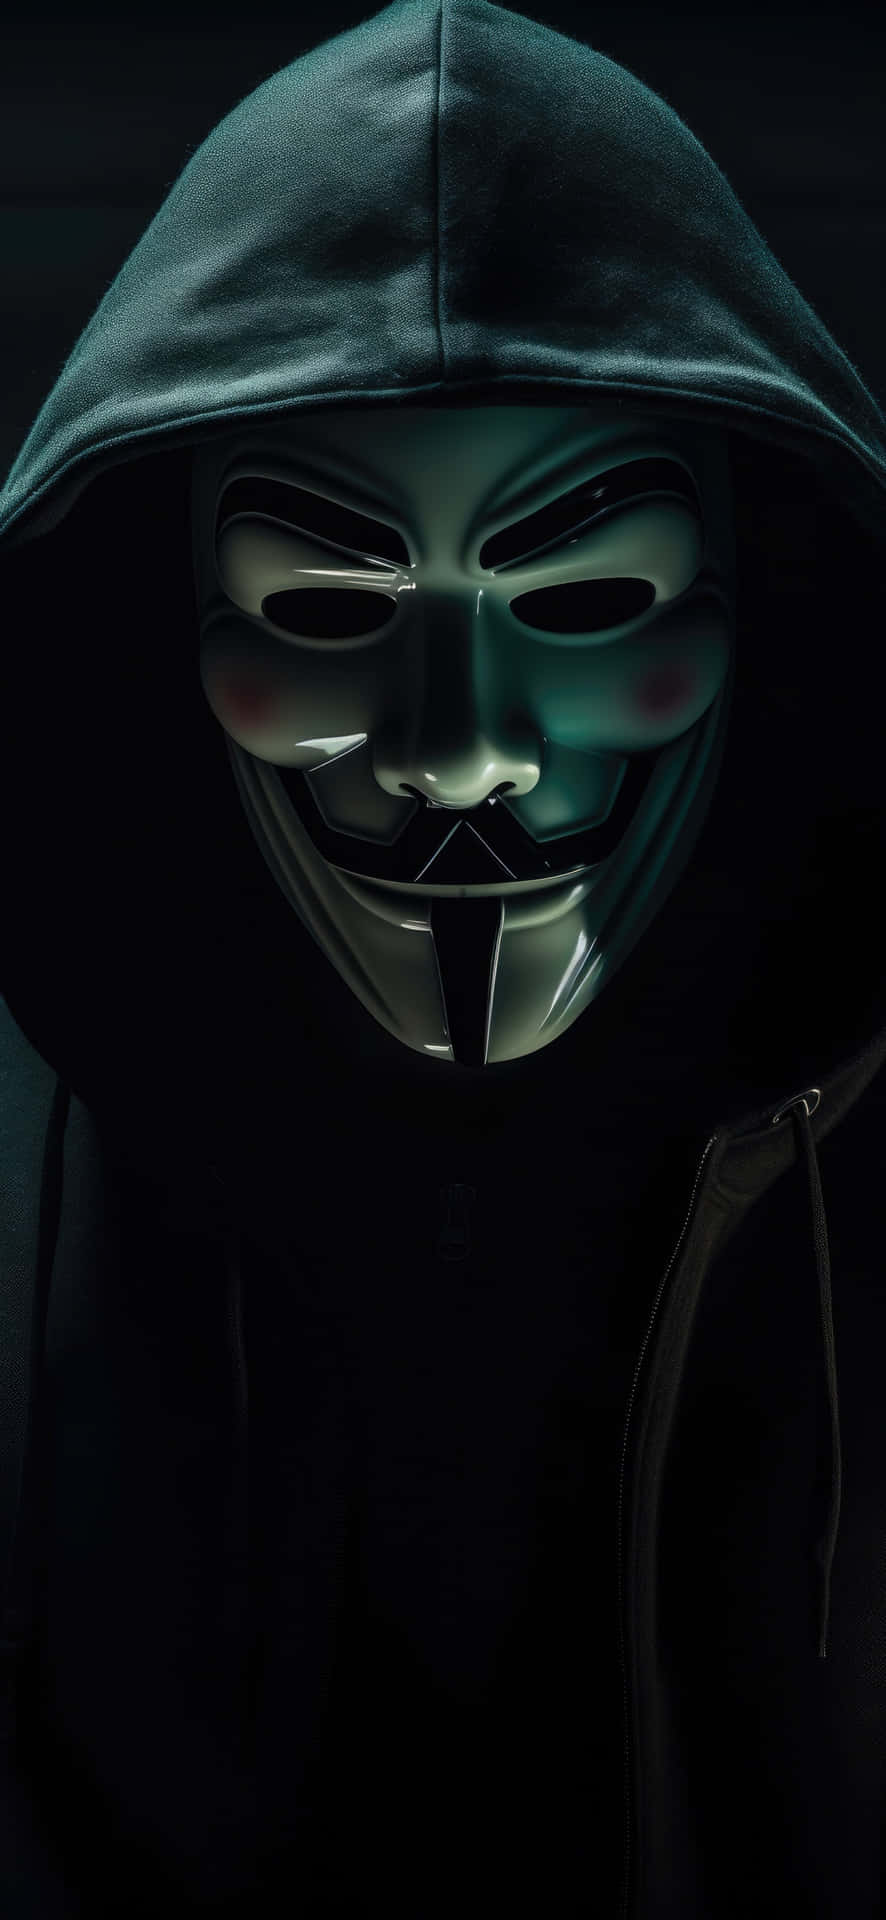 Mysterious_ Hacker_in_ V_for_ Vendetta_ Mask Wallpaper